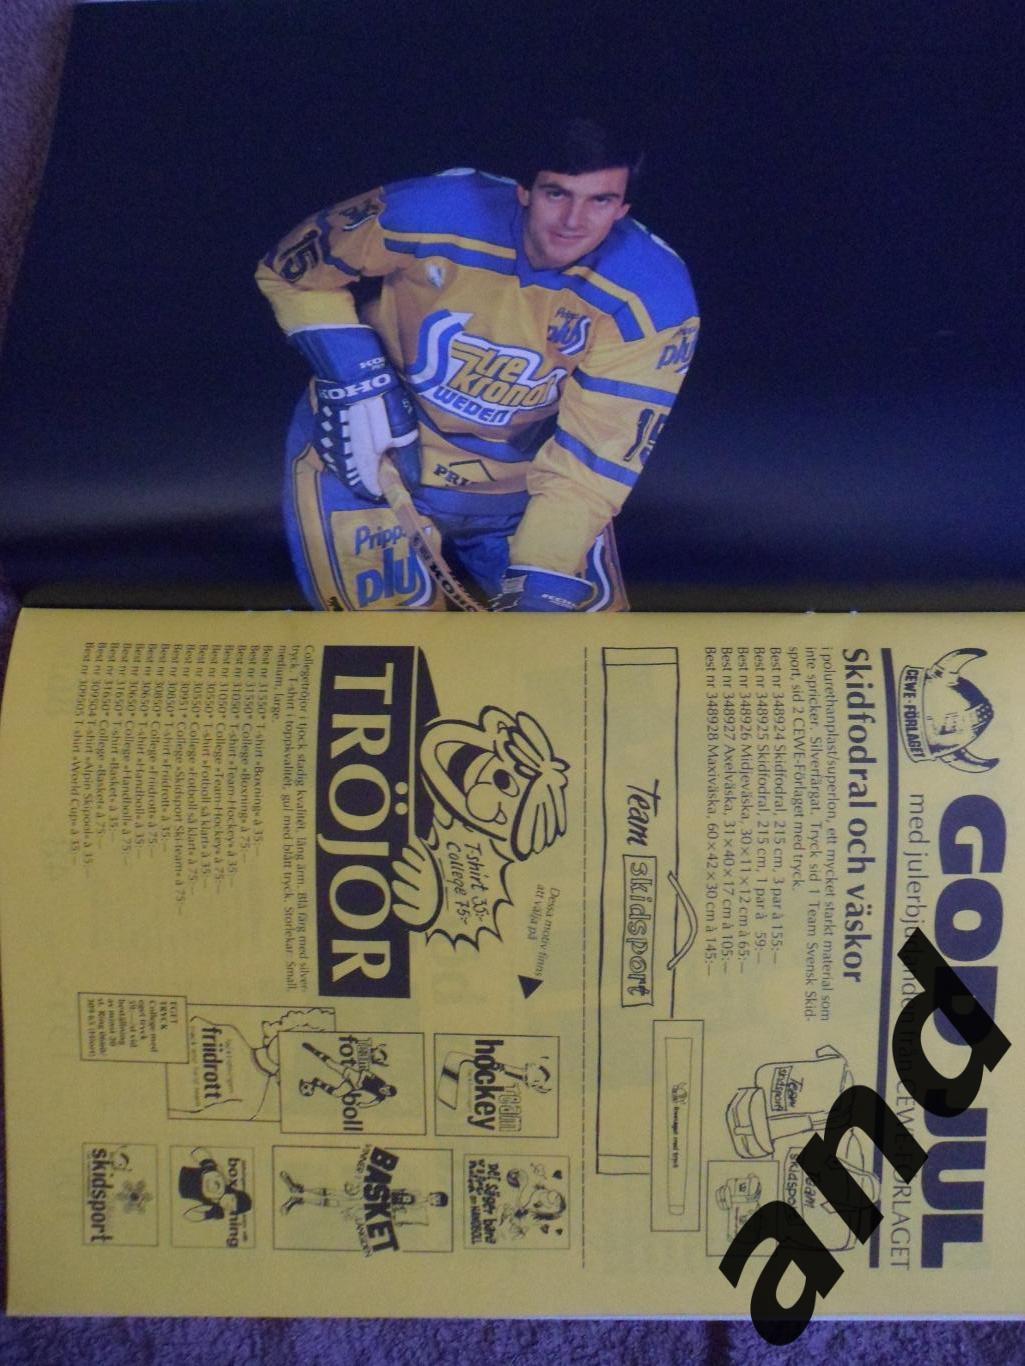 журнал Хоккей (Швеция) № 8 (1982) большой постер: Эрикссон 1